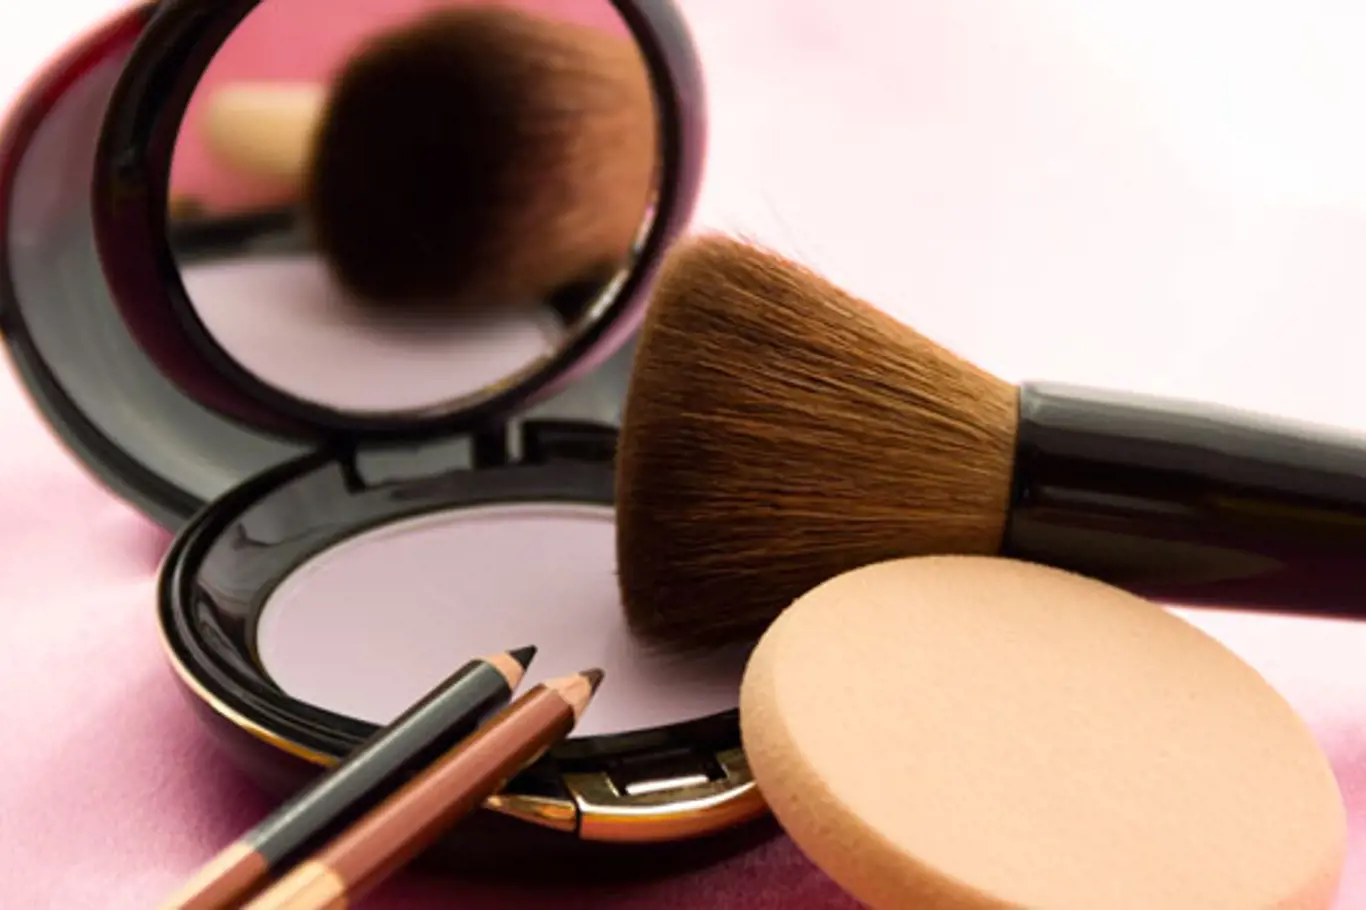 Víte, jakou mají kosmetické přípravky záruční dobu?